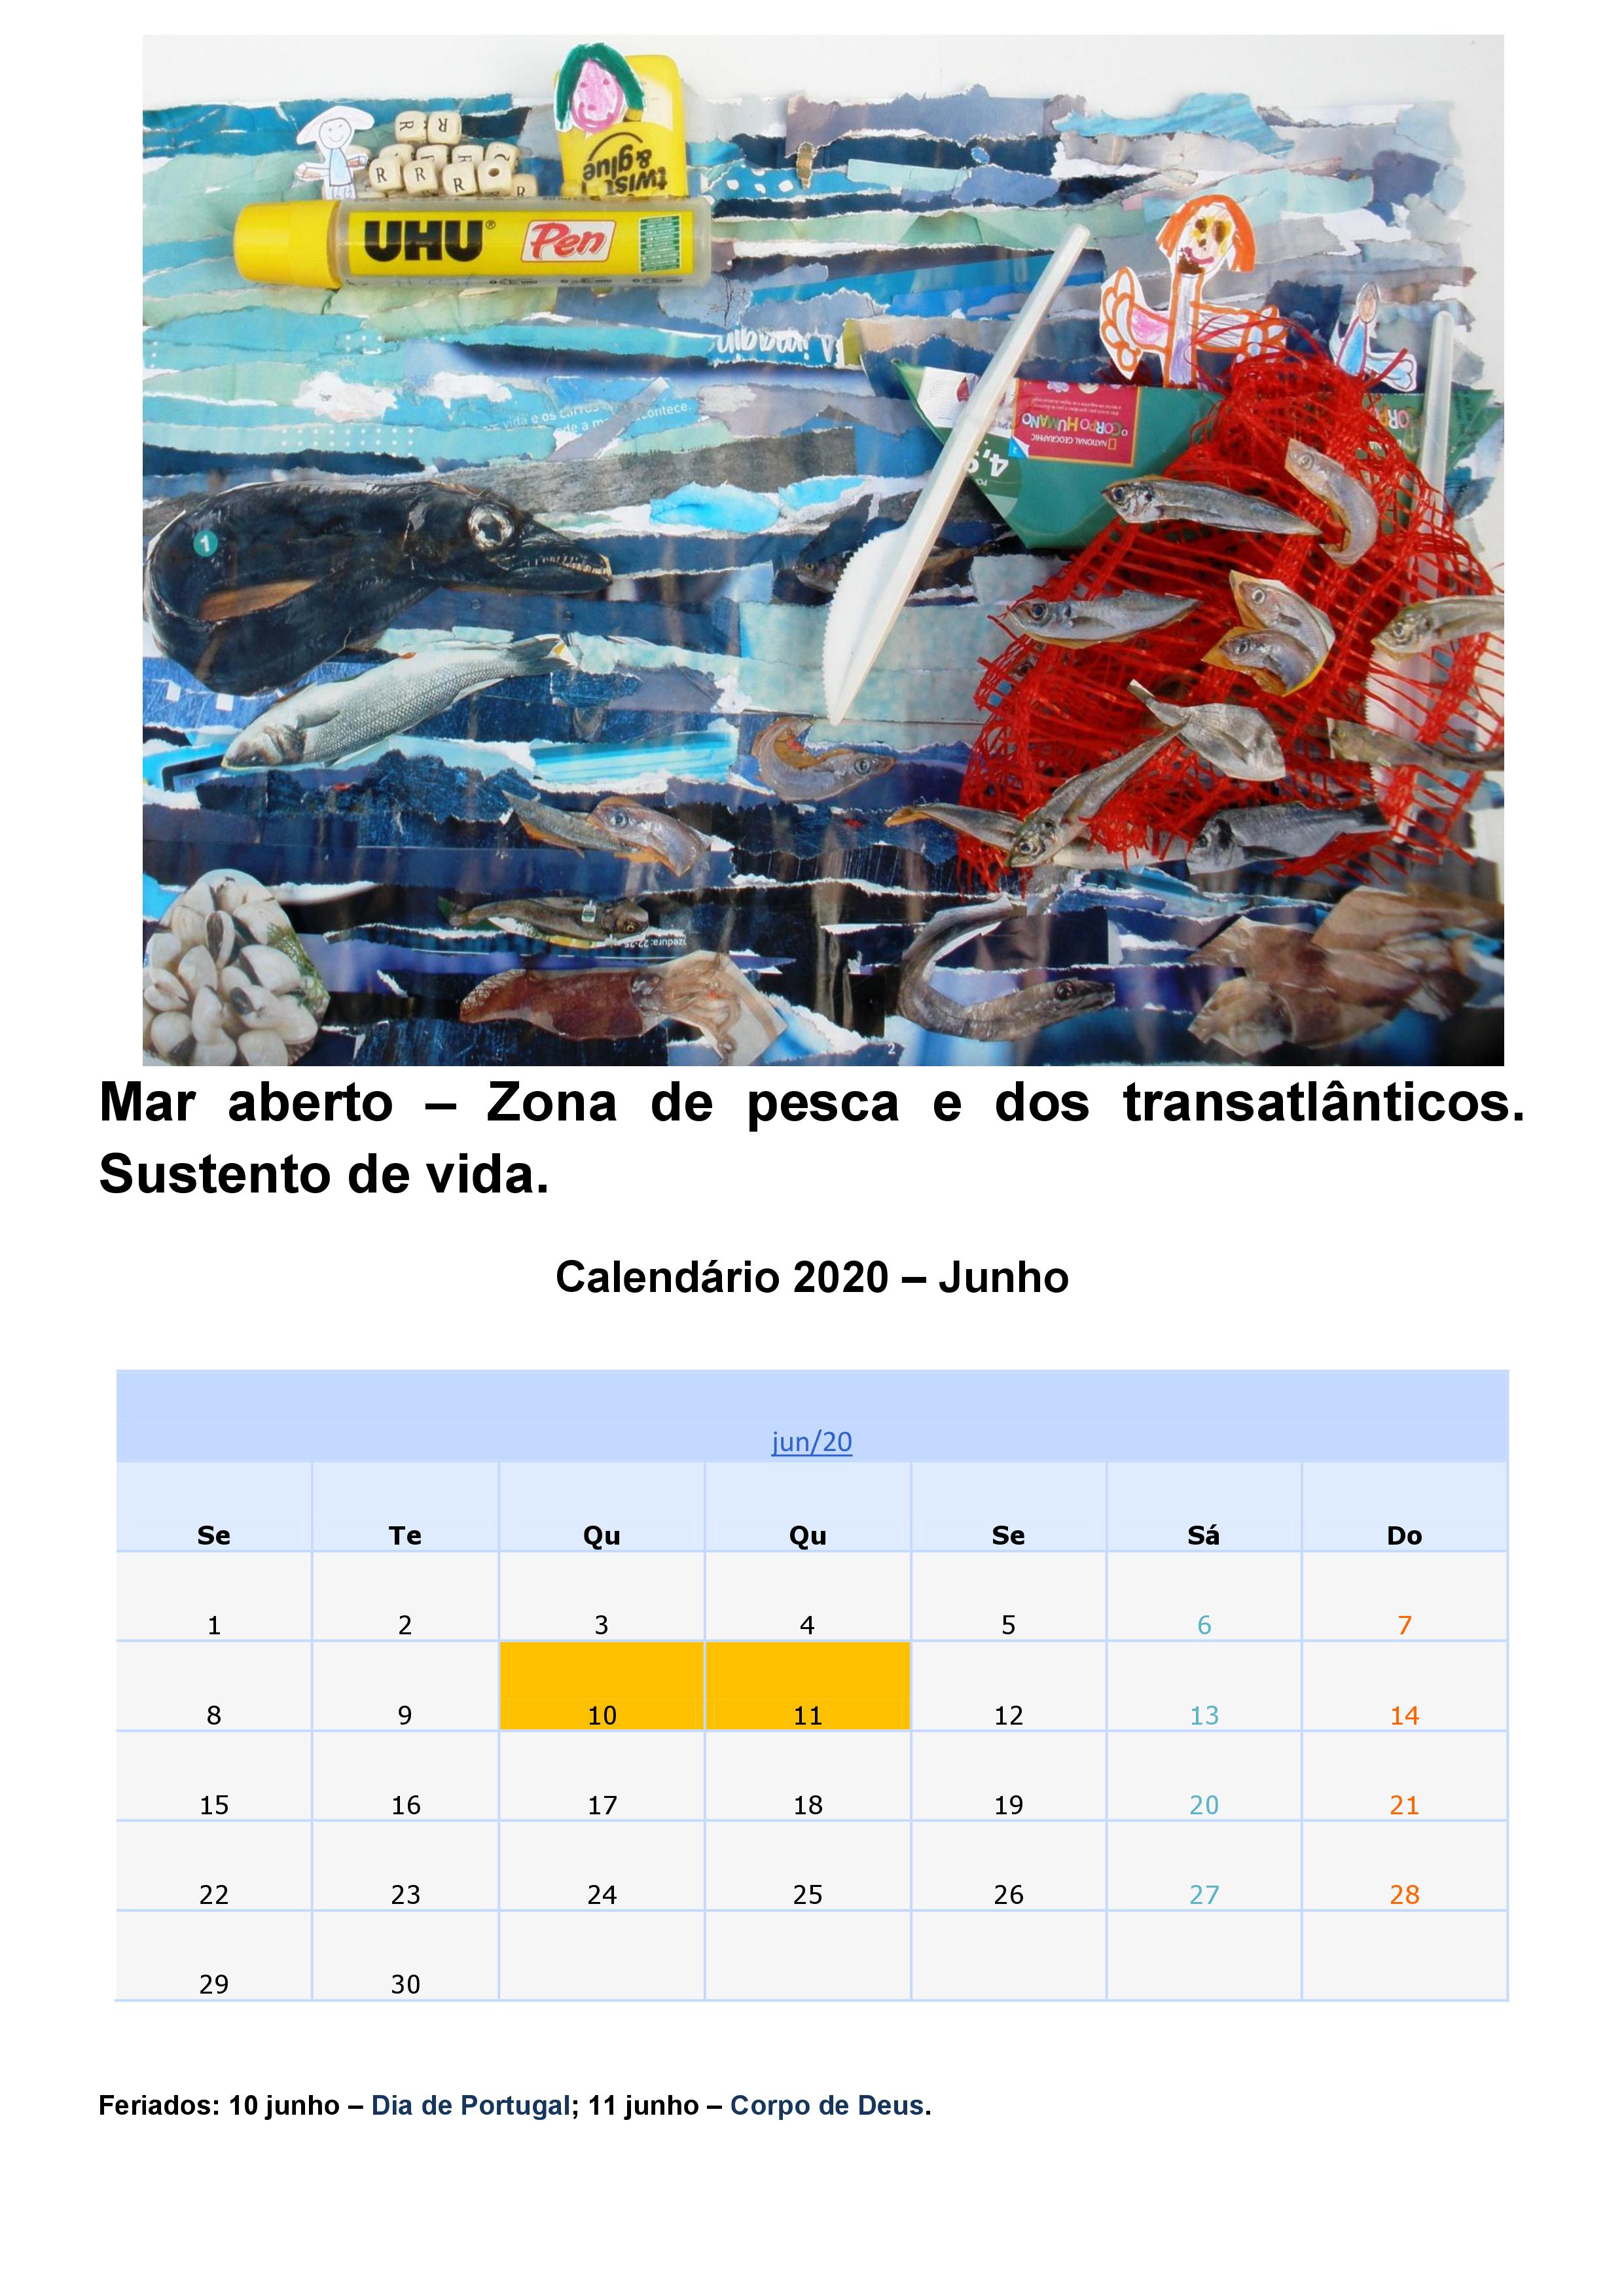 Mar aberto – Zona de pesca e dos transatlânticos. Sustento de vida.